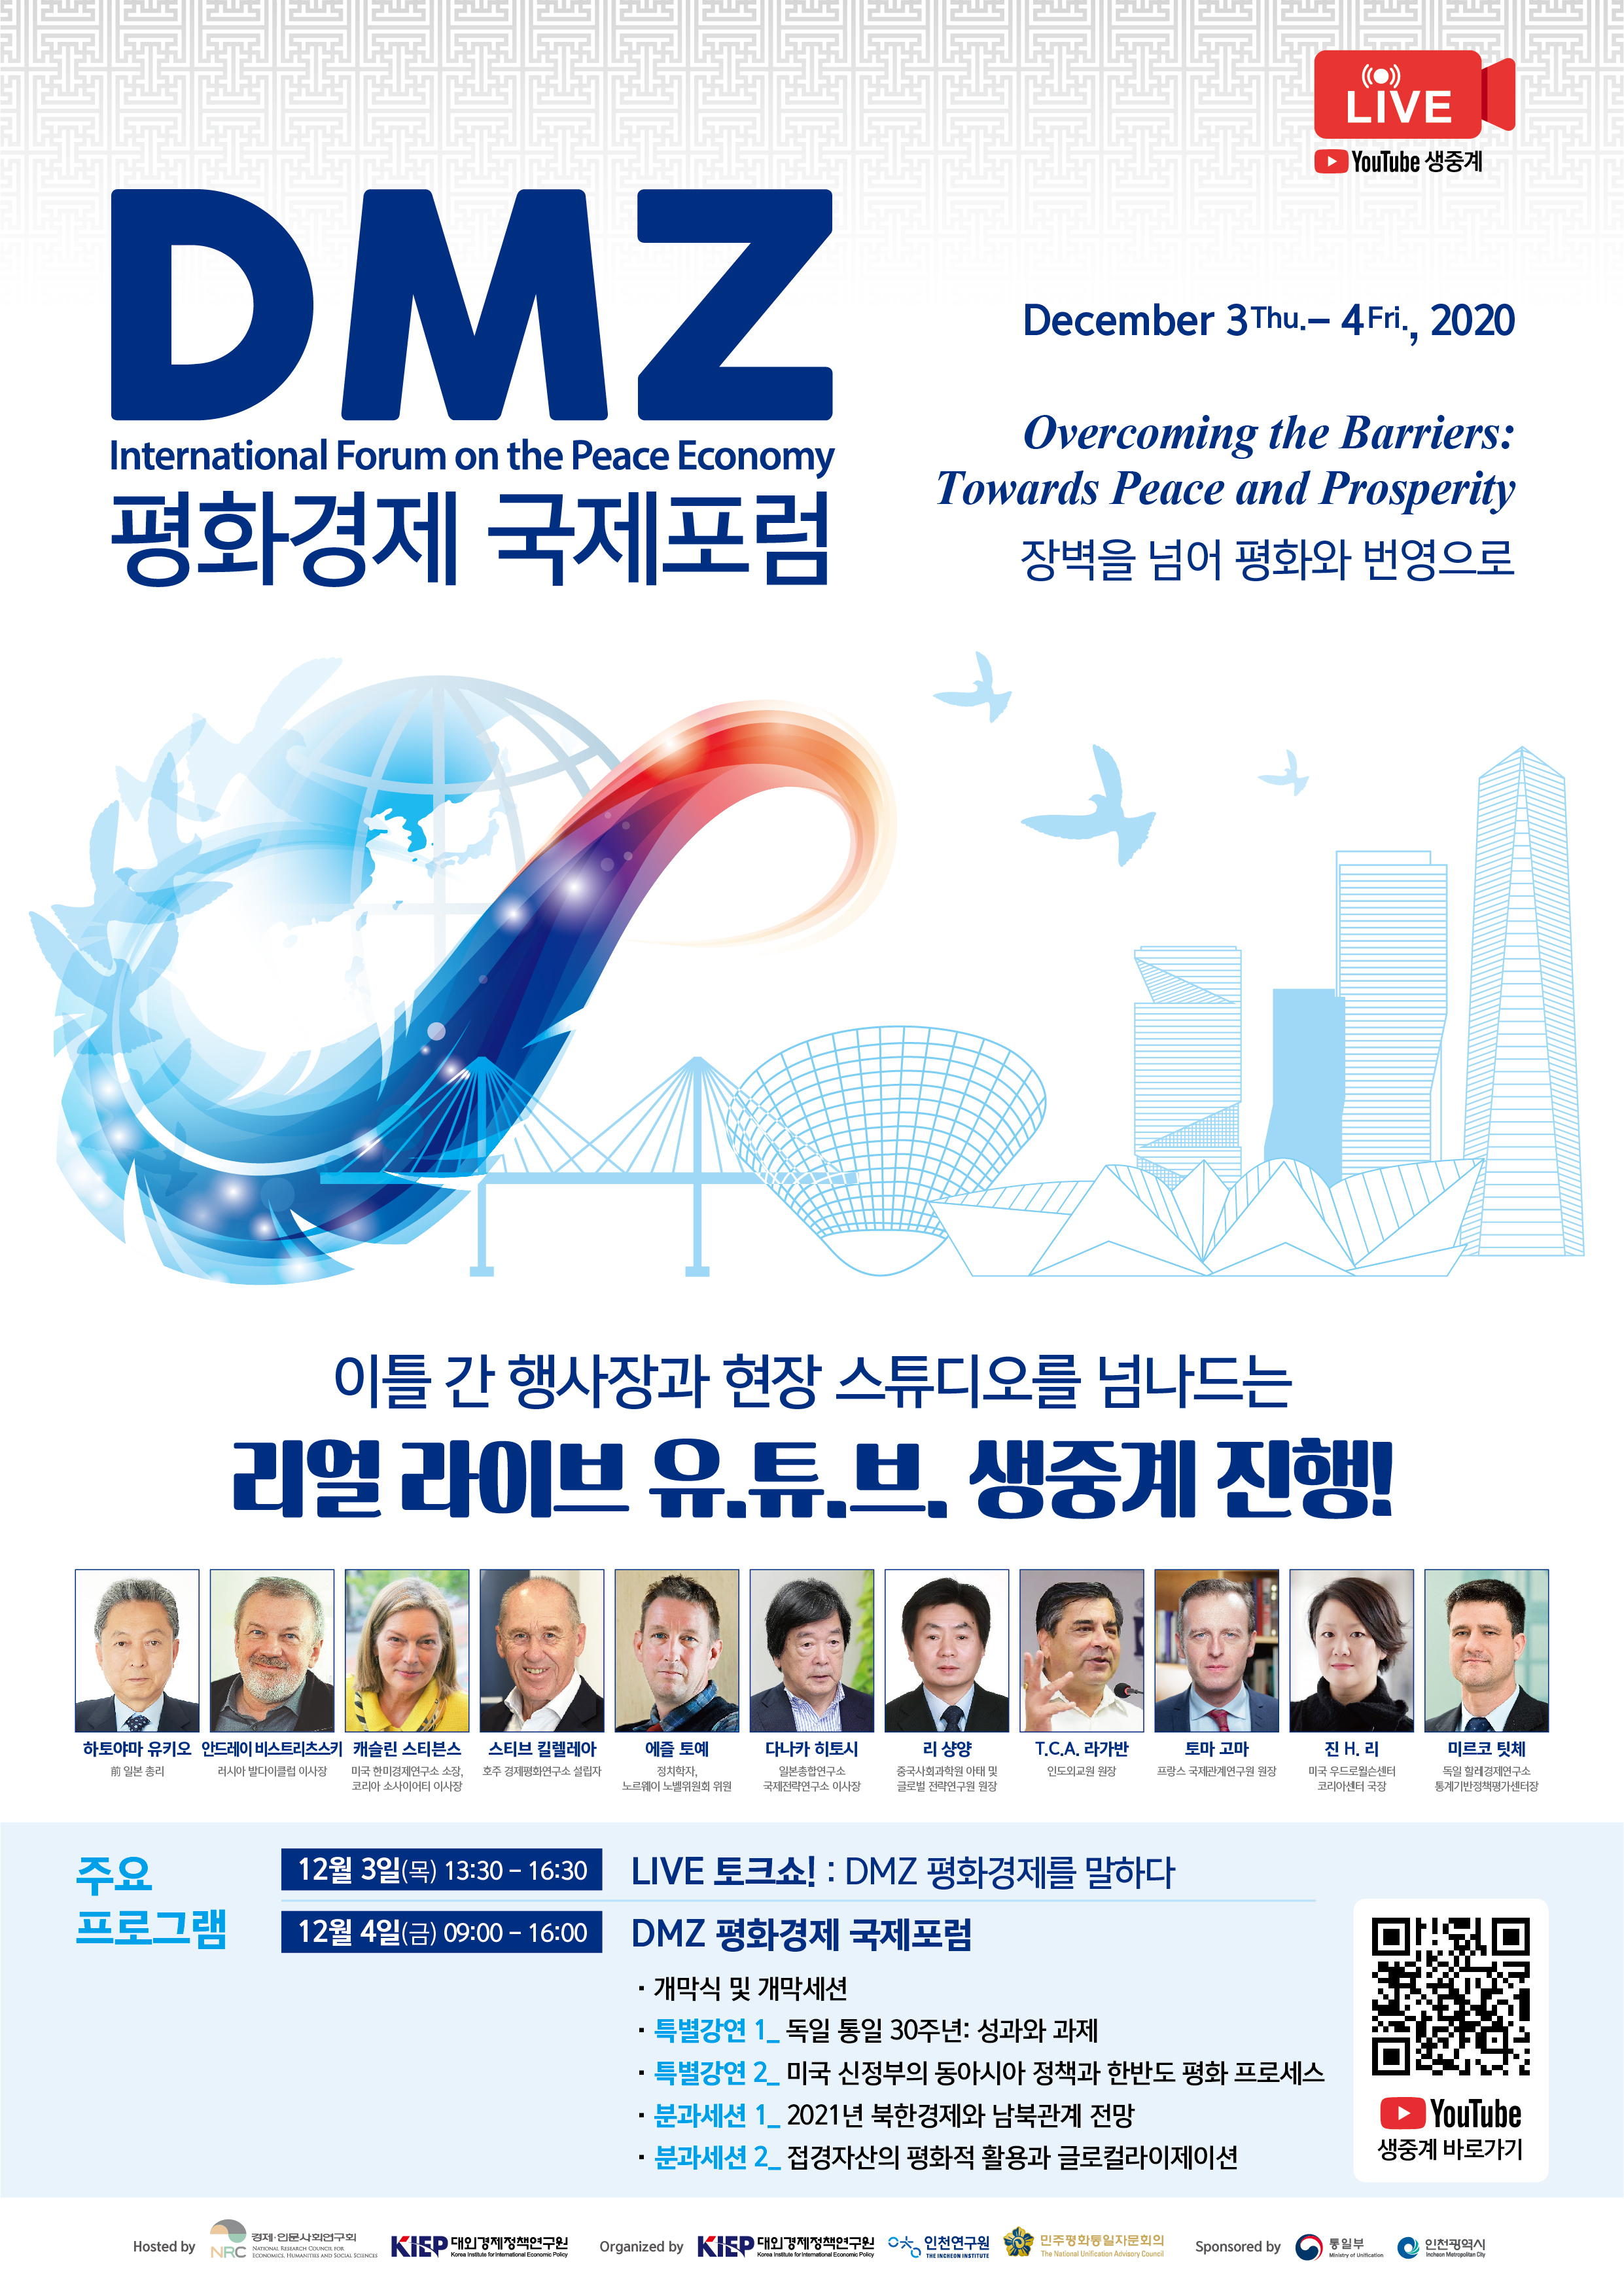 2020년 DMZ 평화경제 국제포럼 인천 개최 관련 이미지